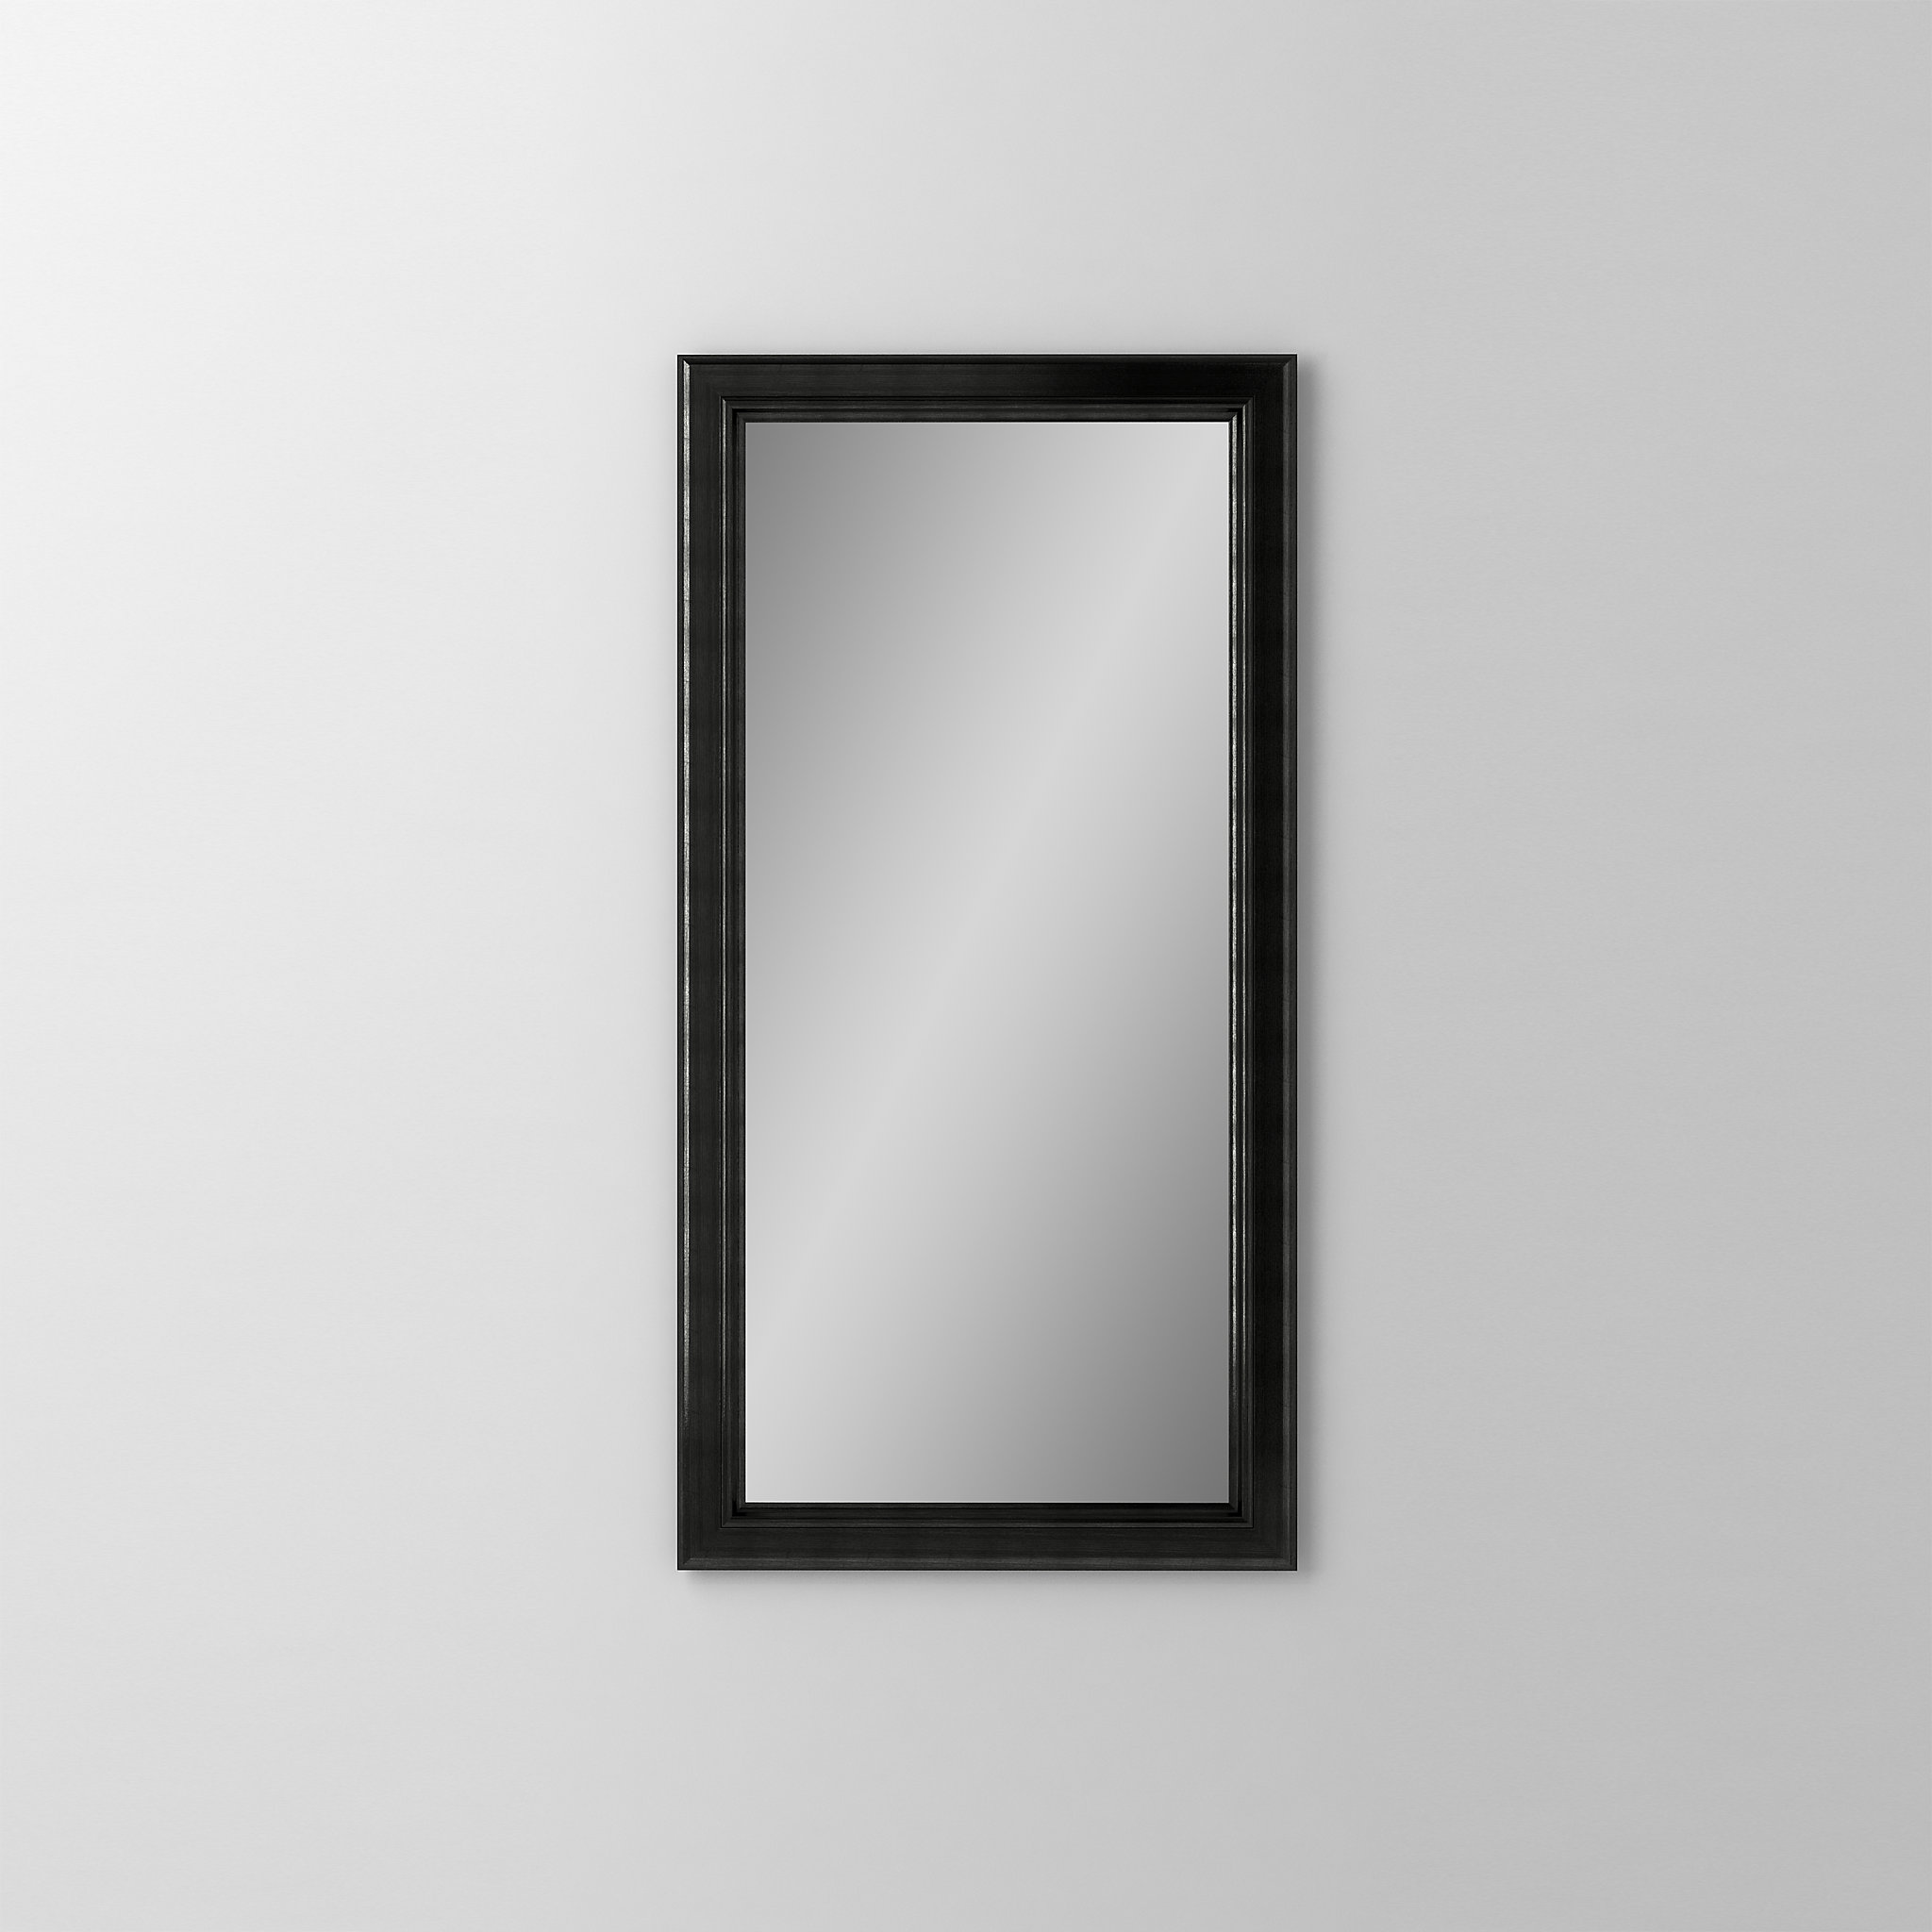 Robern DM1630BM74Main Line Mirror, 16" x 30" x 1-5/8", Bryn Mawr Frame, Brushed Black